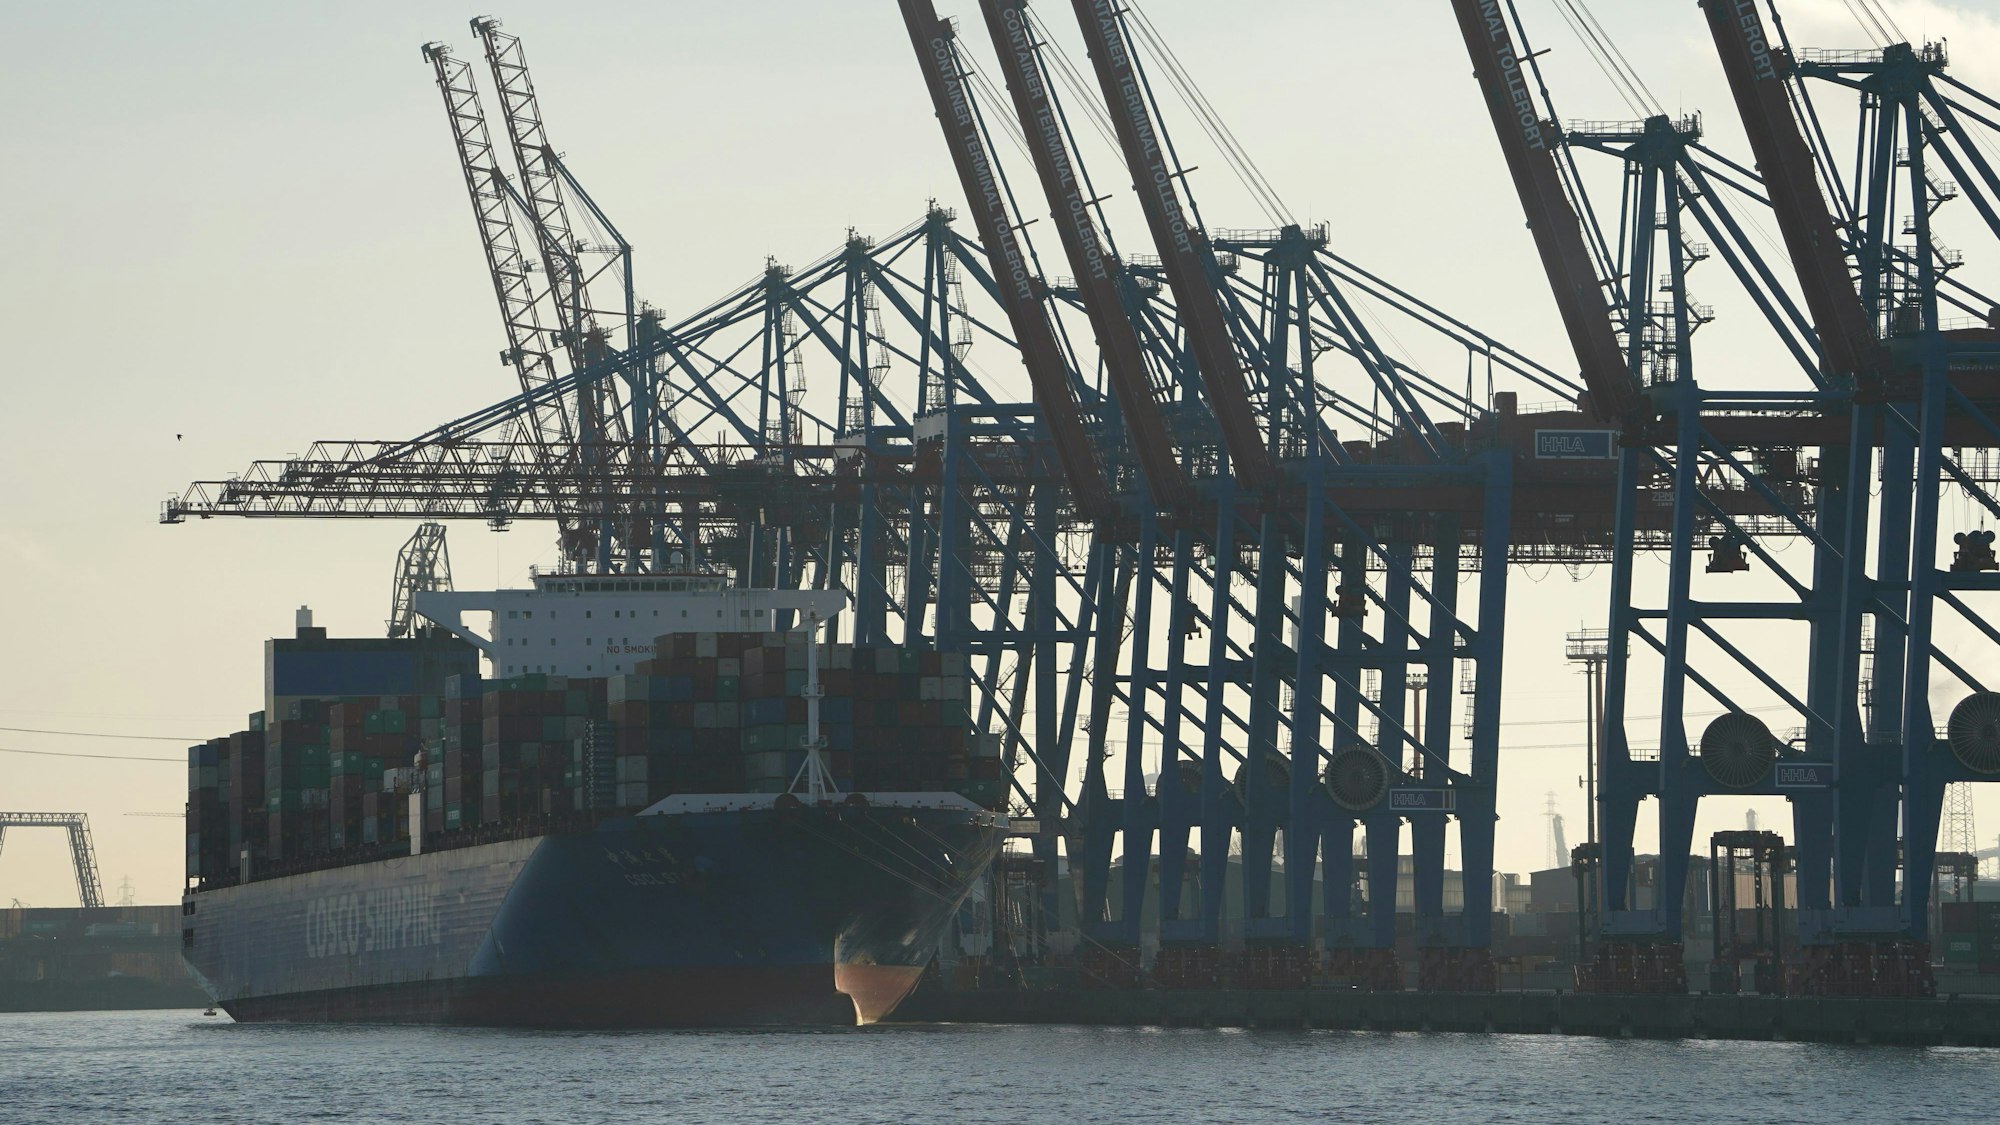 Ein Containerschiff der Reederei Cosco Shipping wird am Container Terminal Tollerort im Hafen be- und entladen.